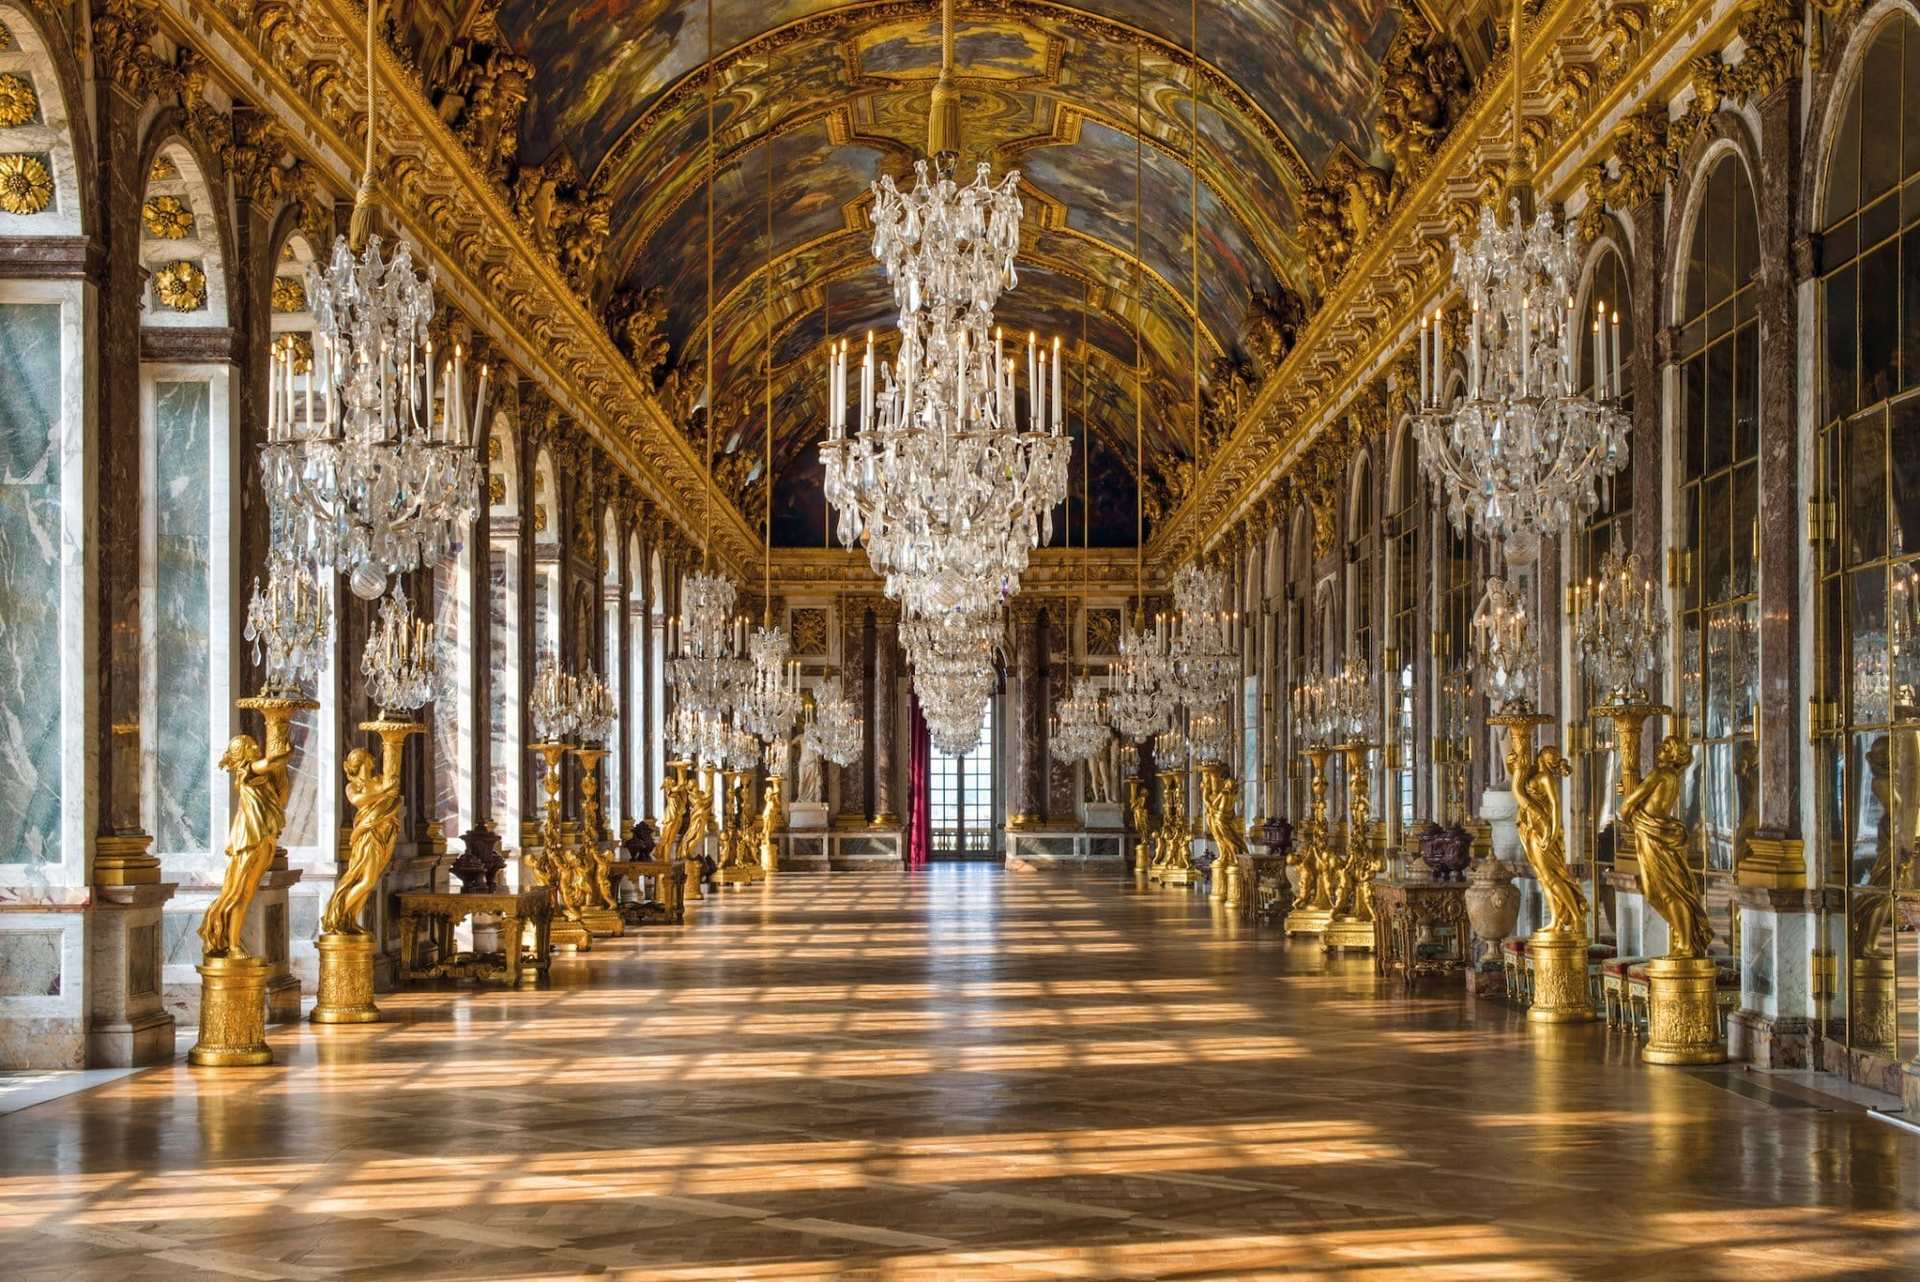 Chateau versailles. Версаль дворец Франция. Королевский дворец в Версале. Бальный зал Фонтенбло. Шато Версальского дворца.